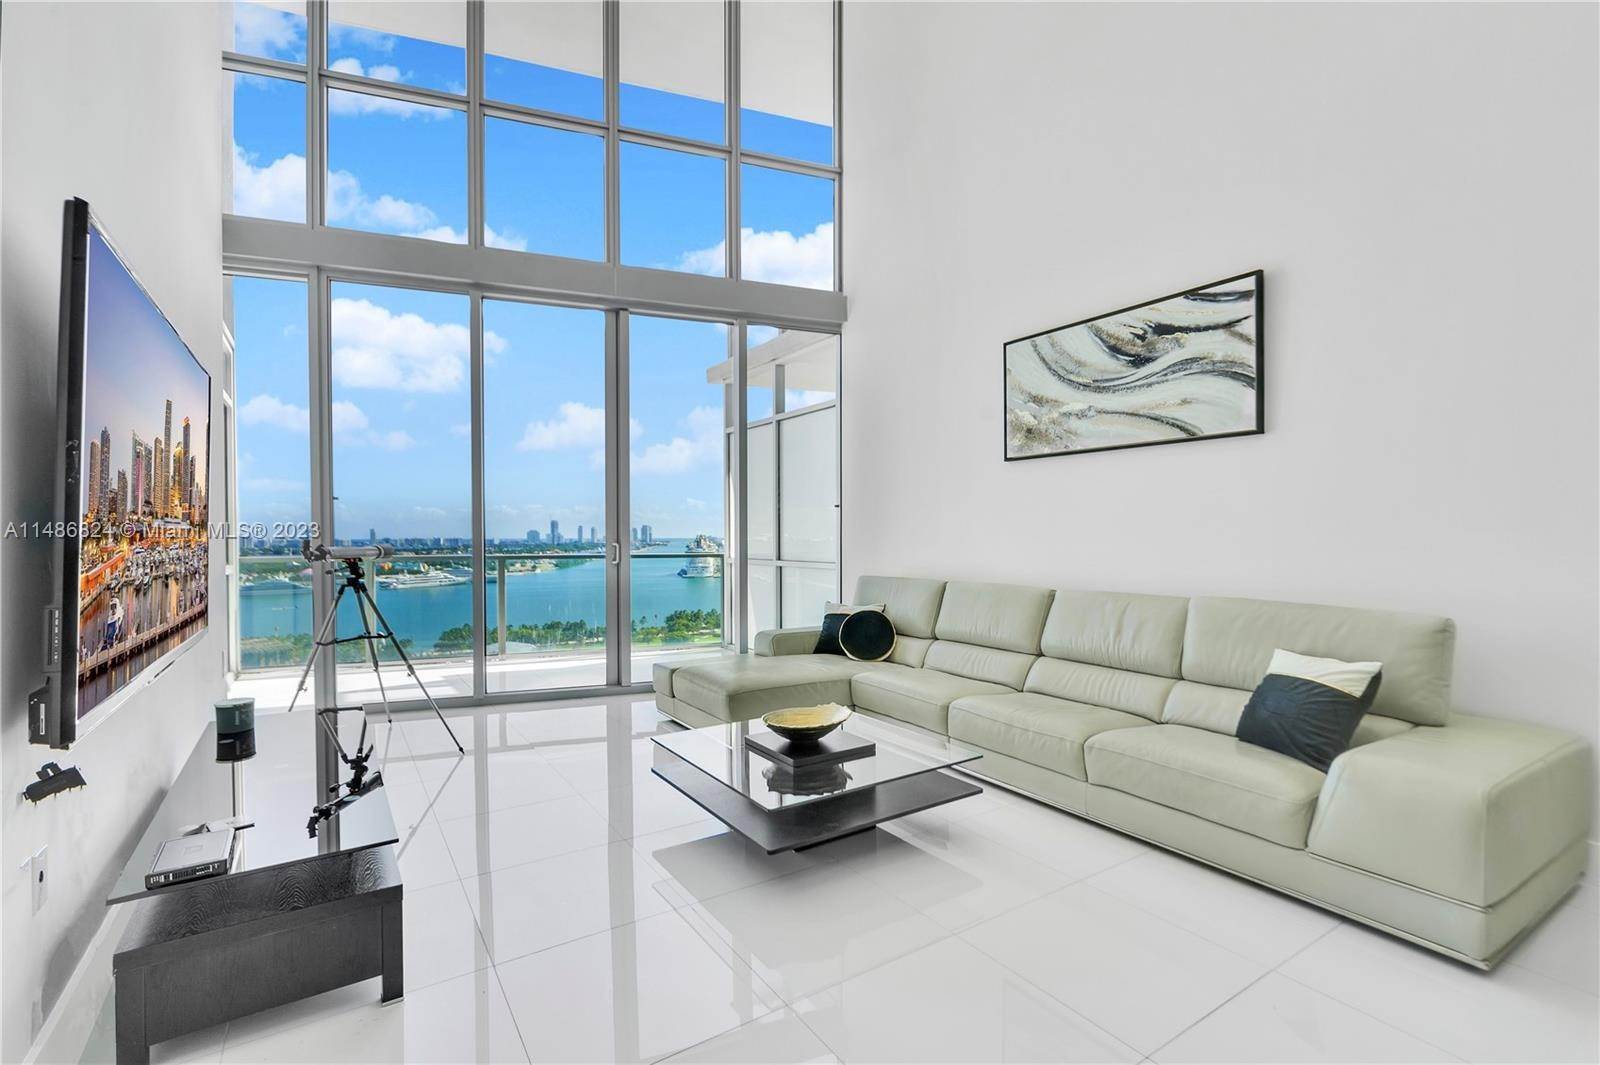 公寓 為 出售 在 Miami, FL 33132